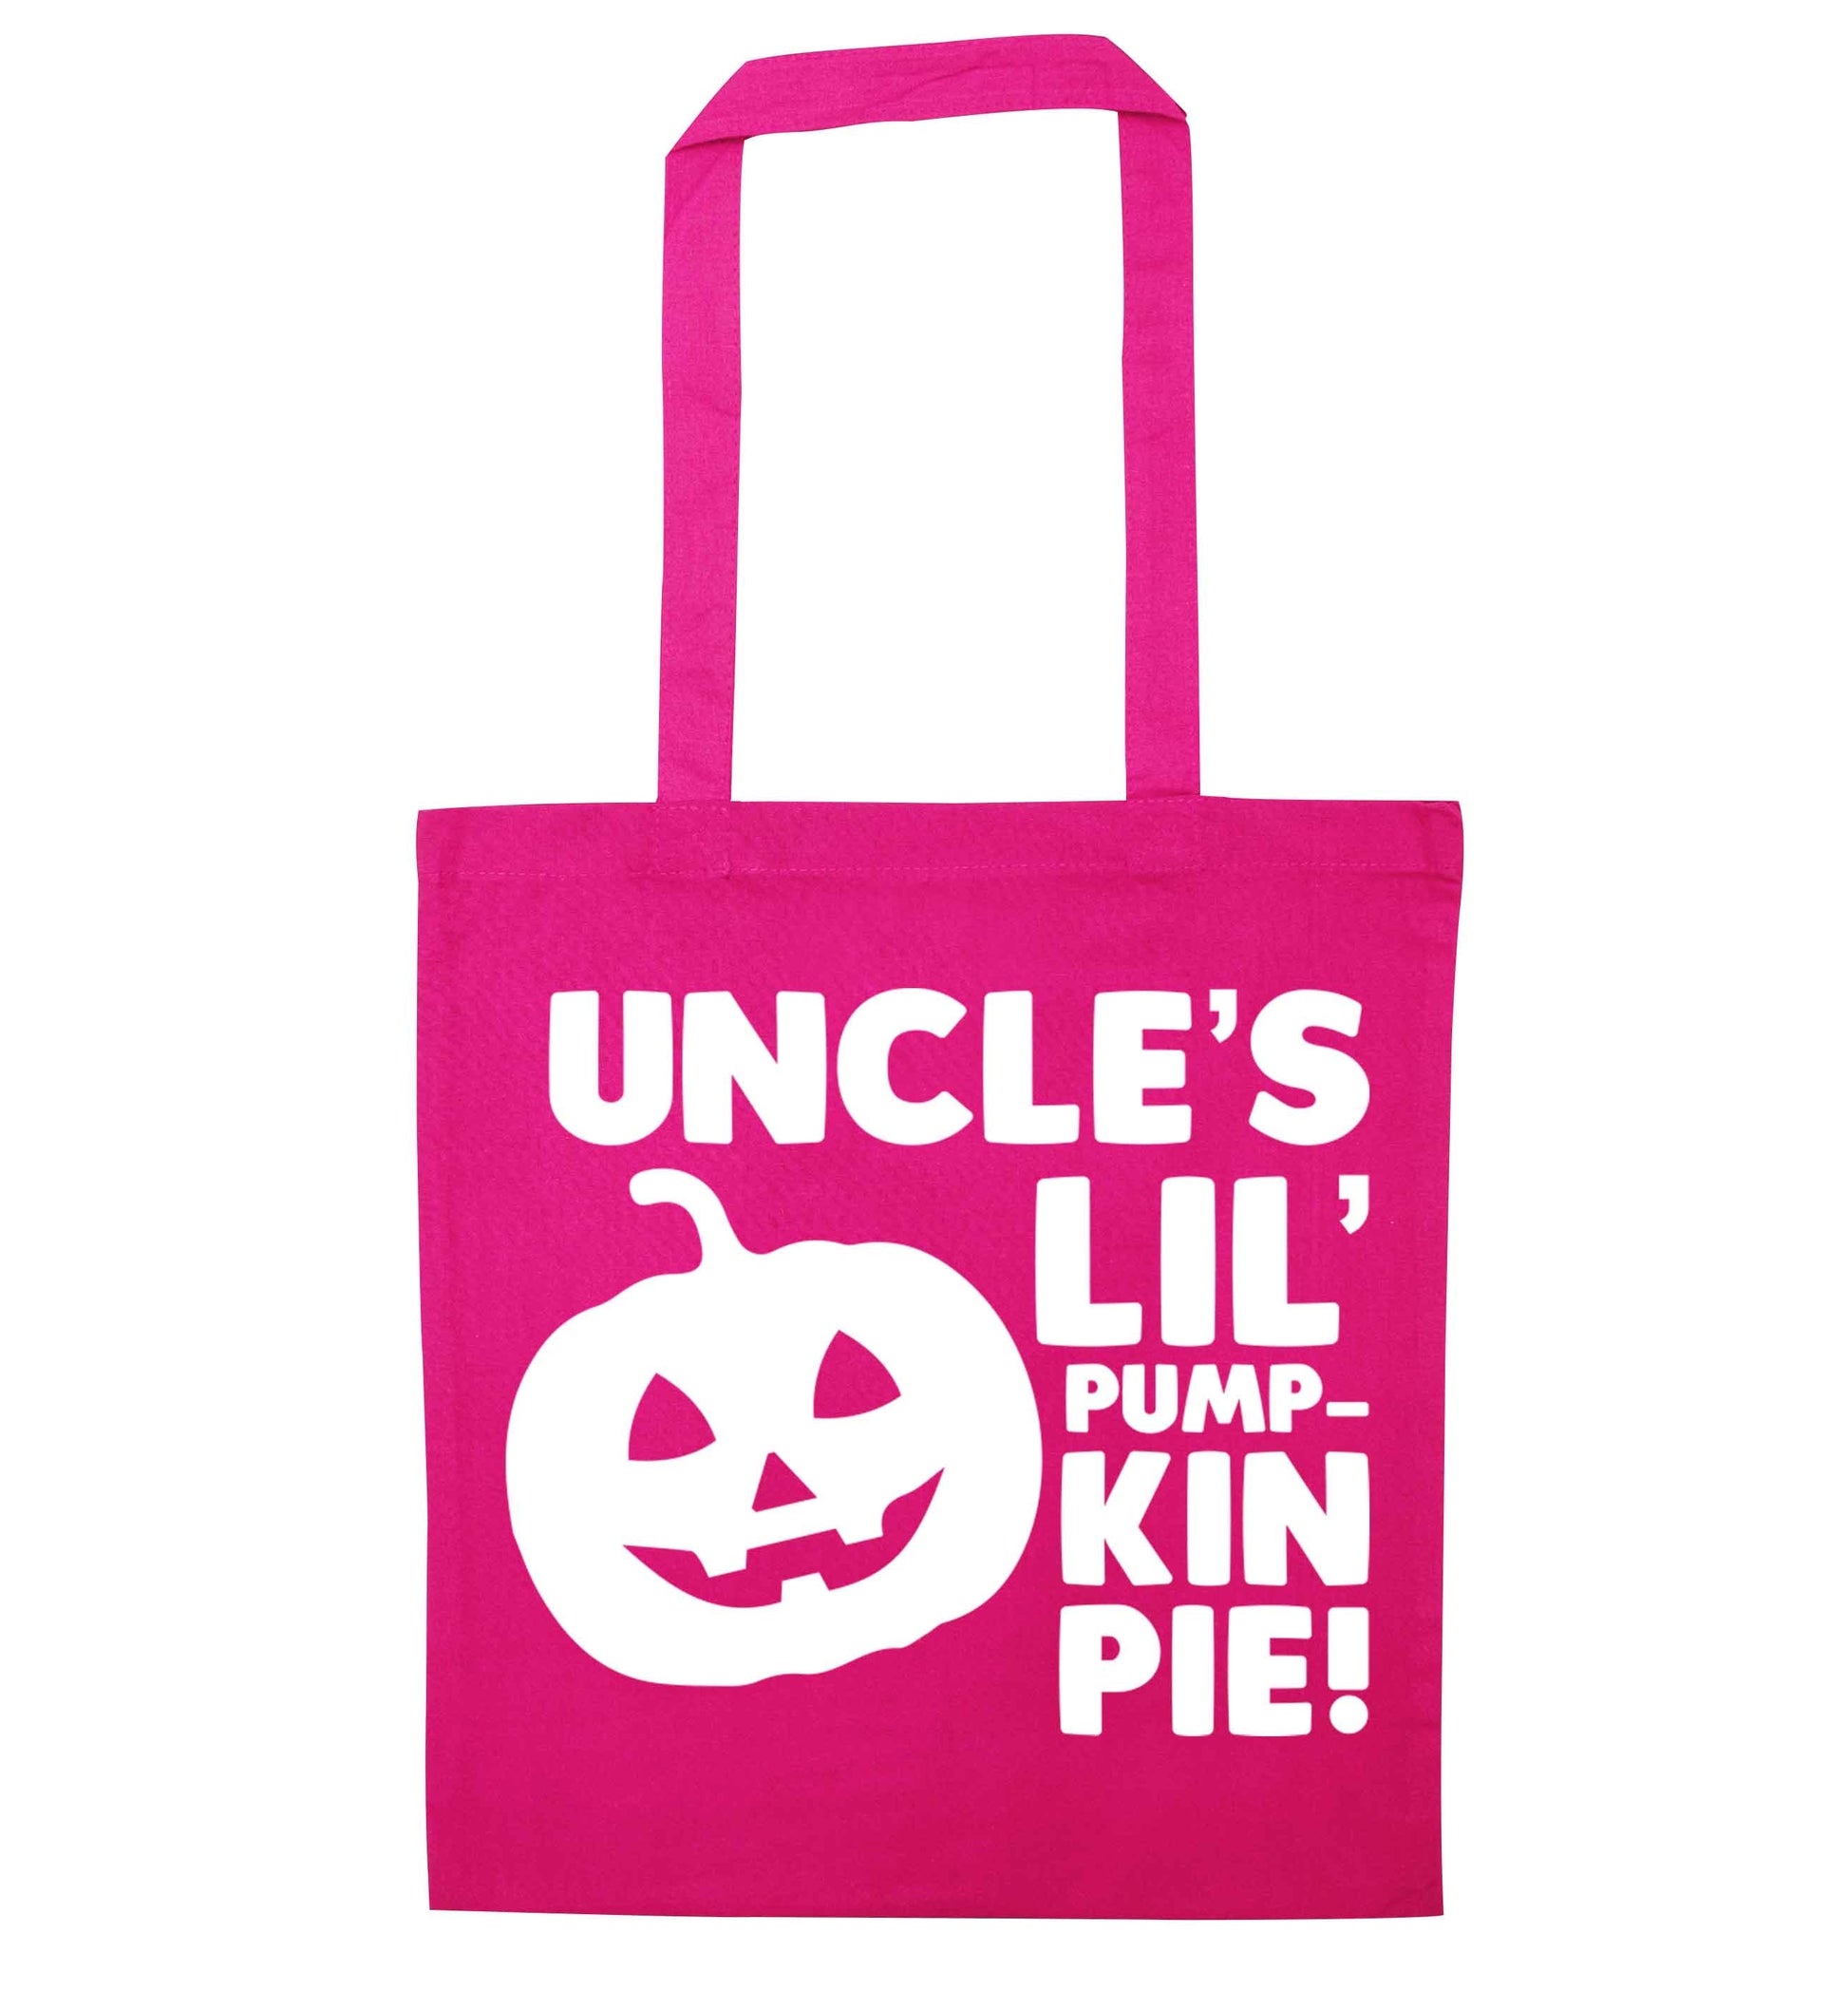 Uncle's lil' pumpkin pie pink tote bag